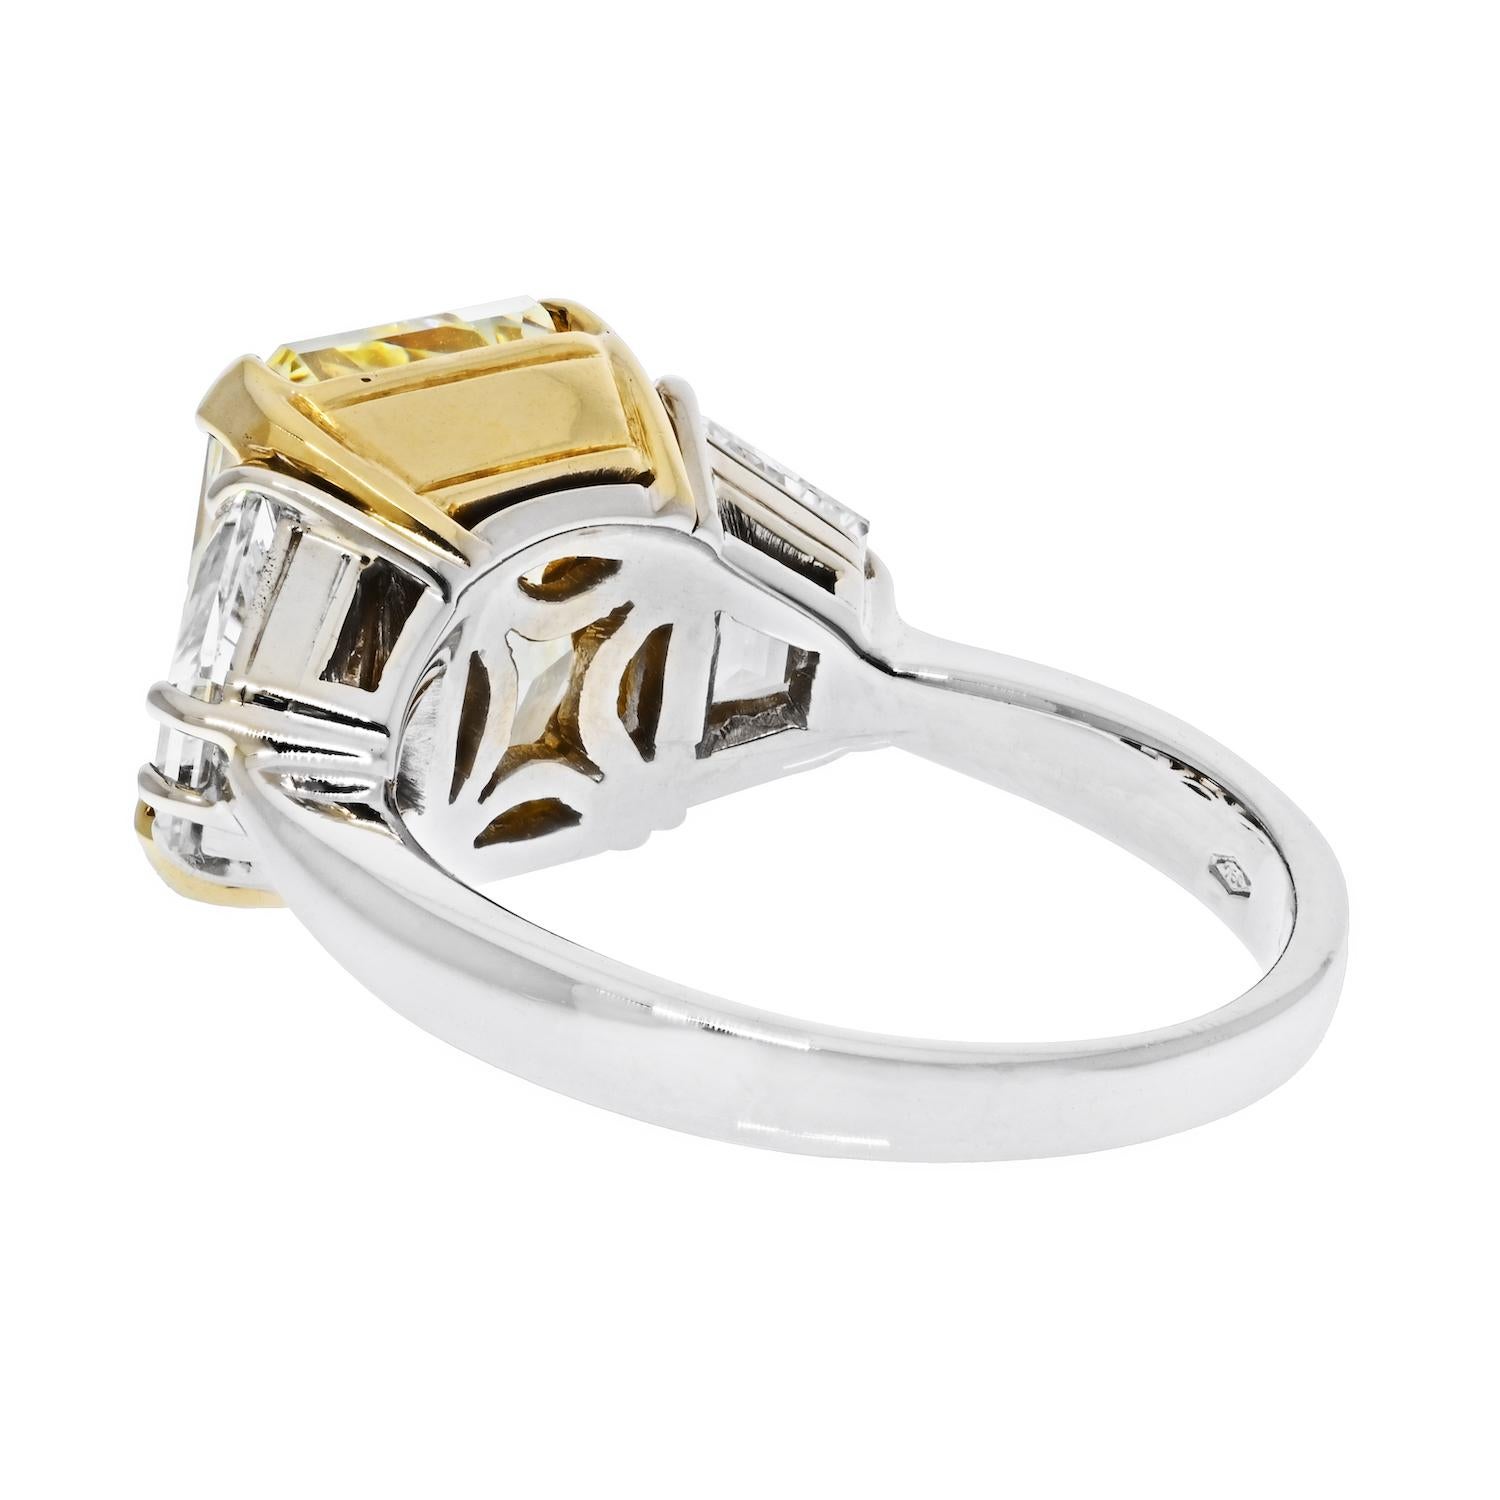 7.05 Carat Radiant Cut Fancy Yellow GIA VS2 Three Stone Diamond Engagement Ring.

Three stone diamond engagement ring crafted in platinum and 18k yellow gold, mounted with a 7.05 carat Radiant Cut Fancy Yellow Diamond. It is GIA certified as Fancy